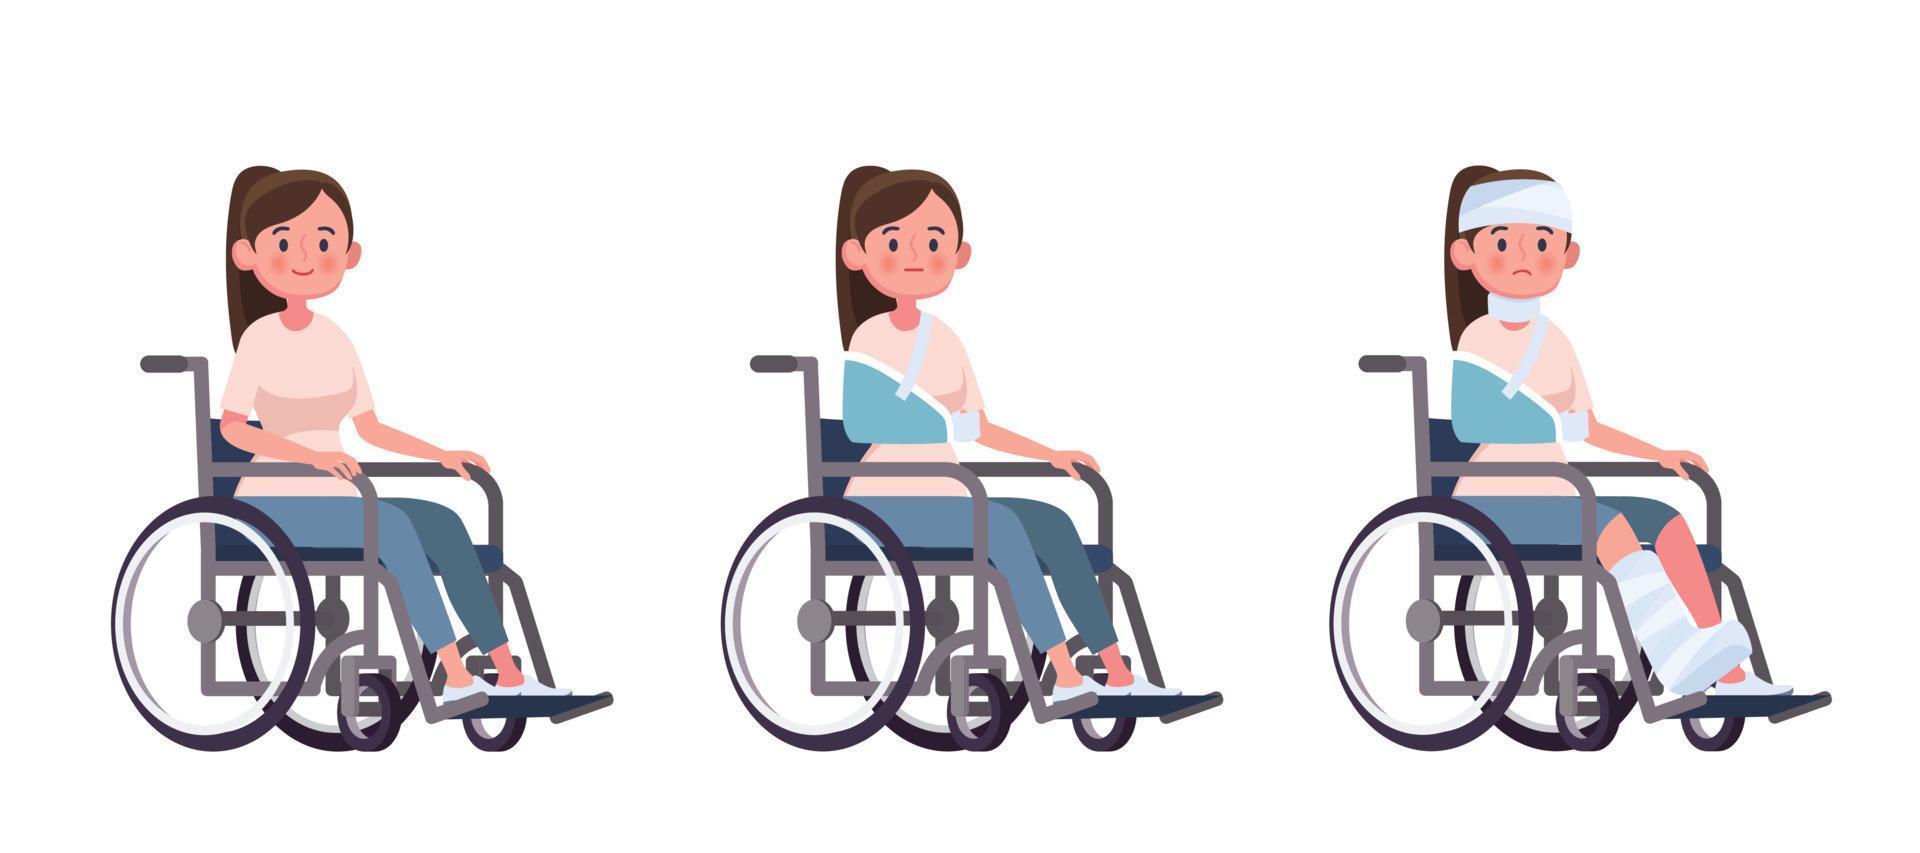 jeune femme dans un fauteuil roulant set vector cartoon illustration concept de blessure et de récupération d'invalidité après un accident